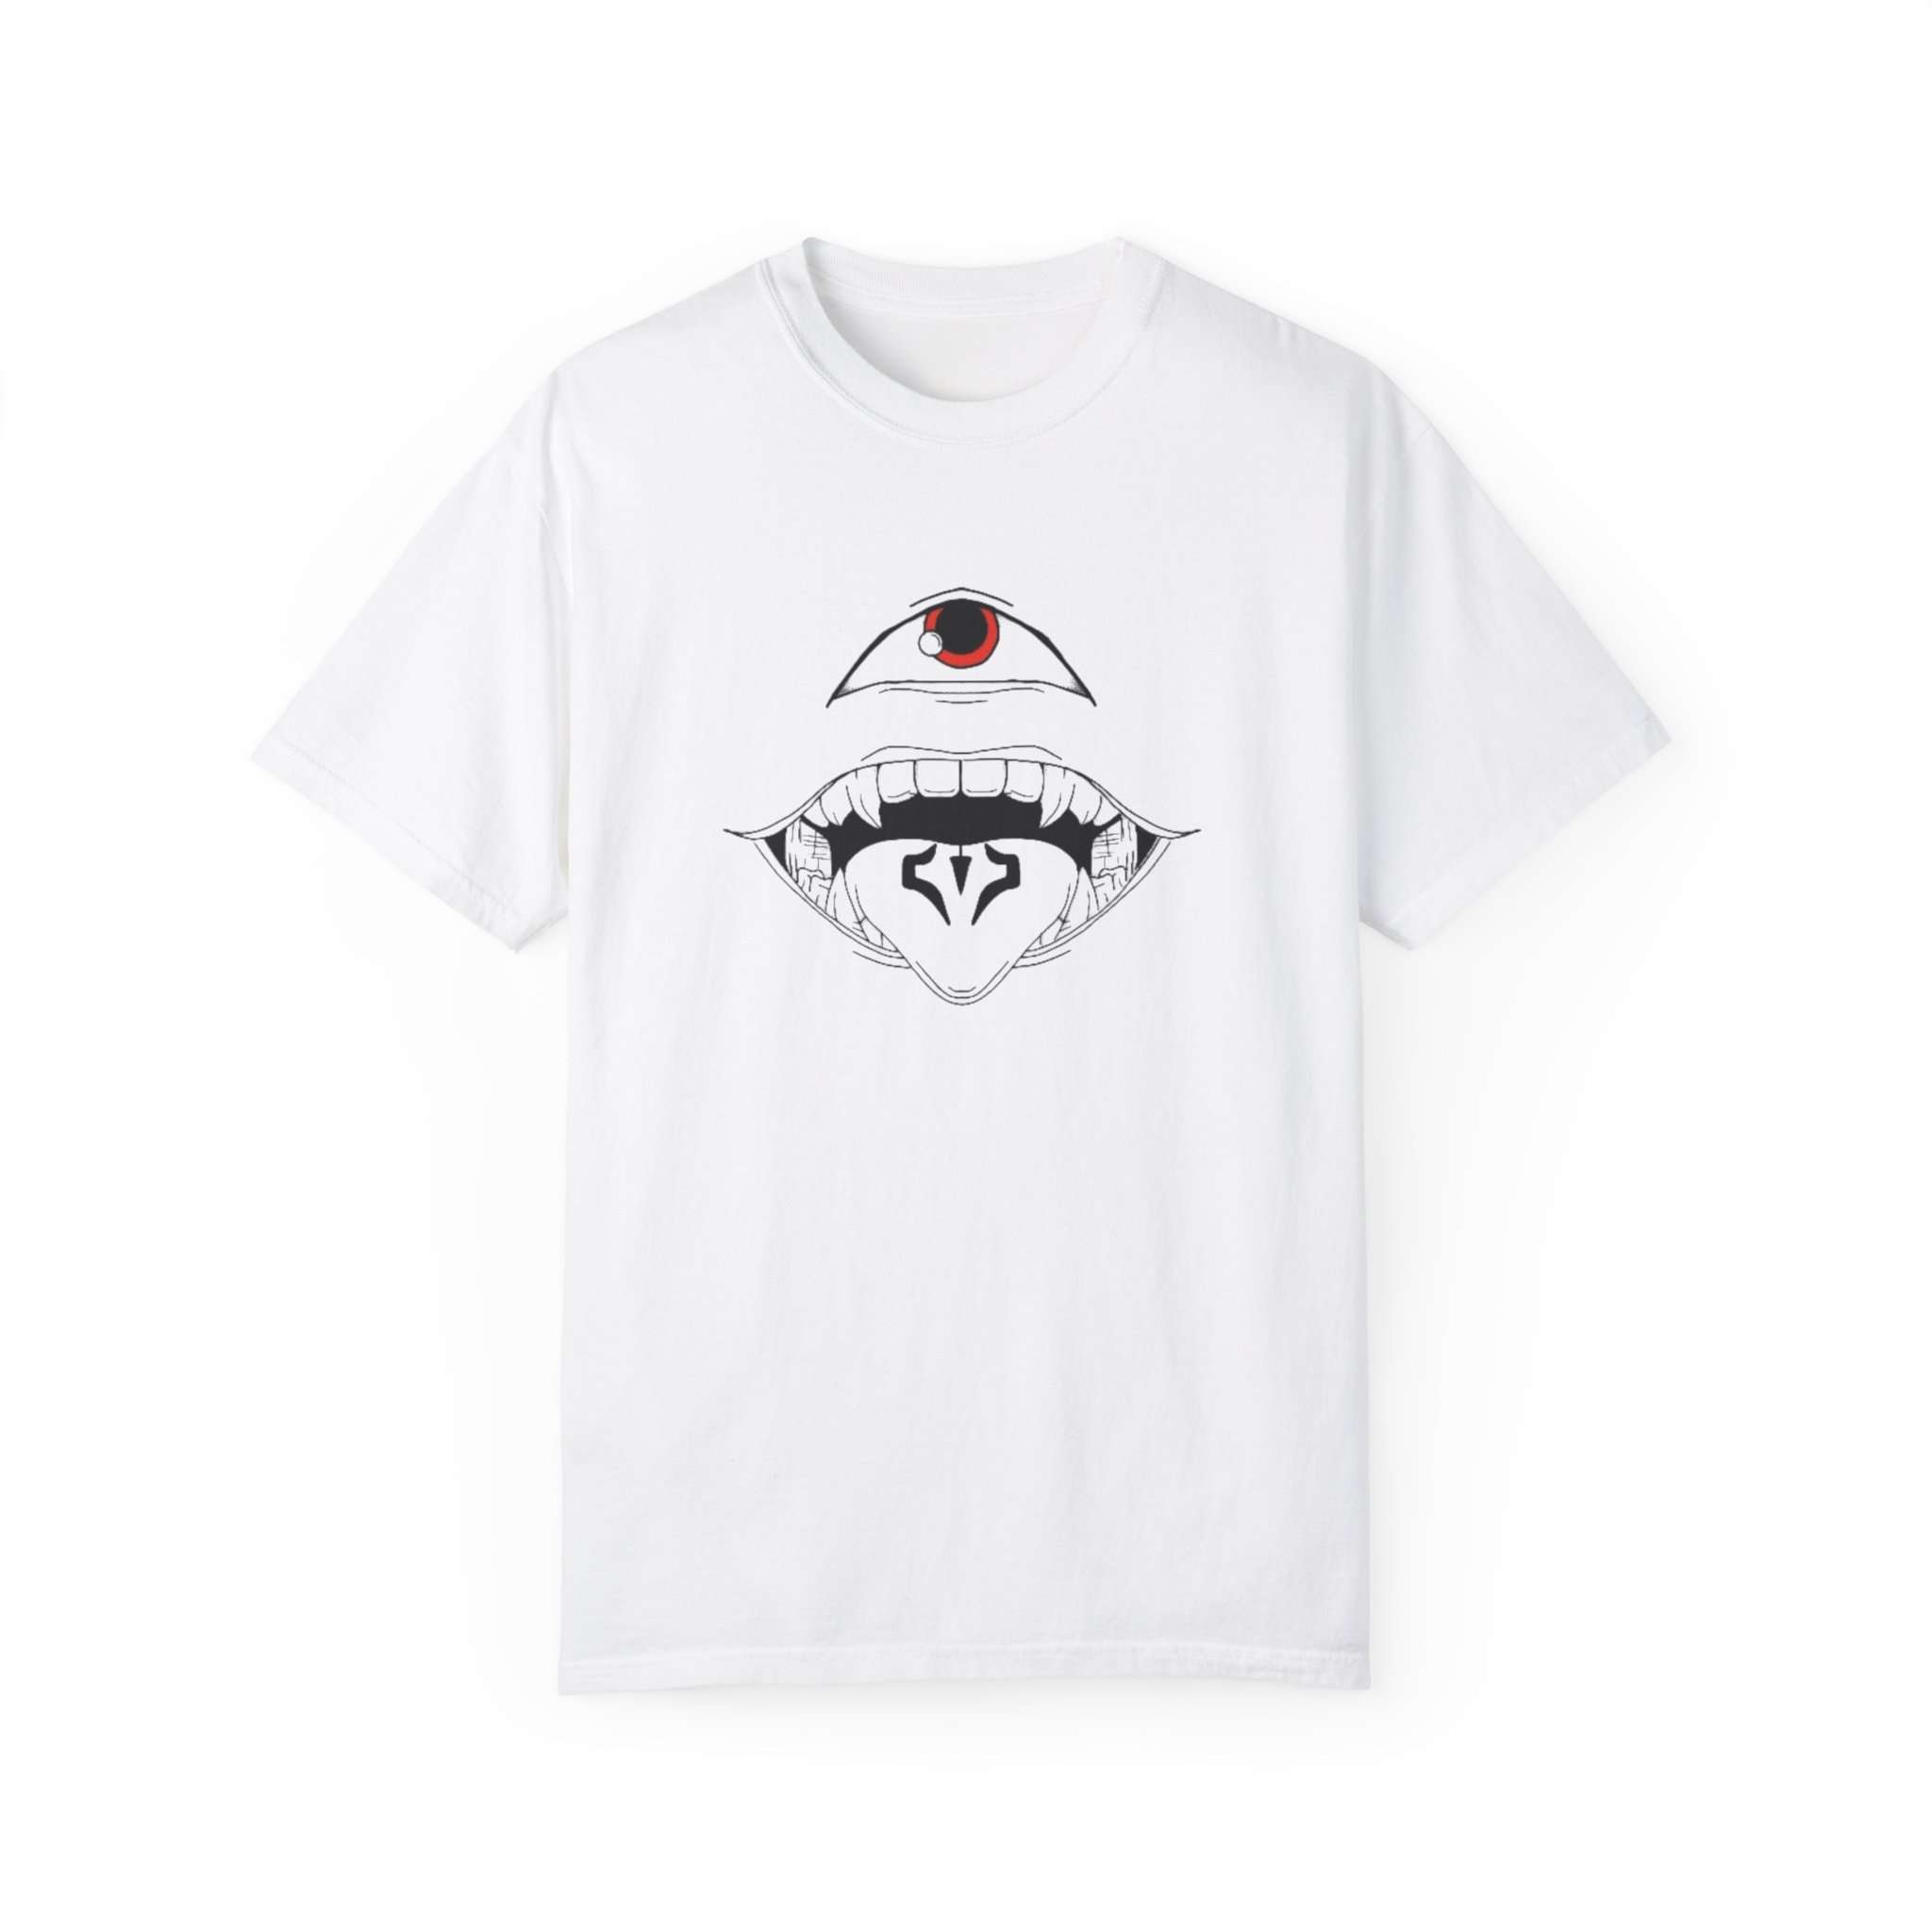 Sukuna Tongue & Eyes Art Unisex Garment-Dyed T-Shirt